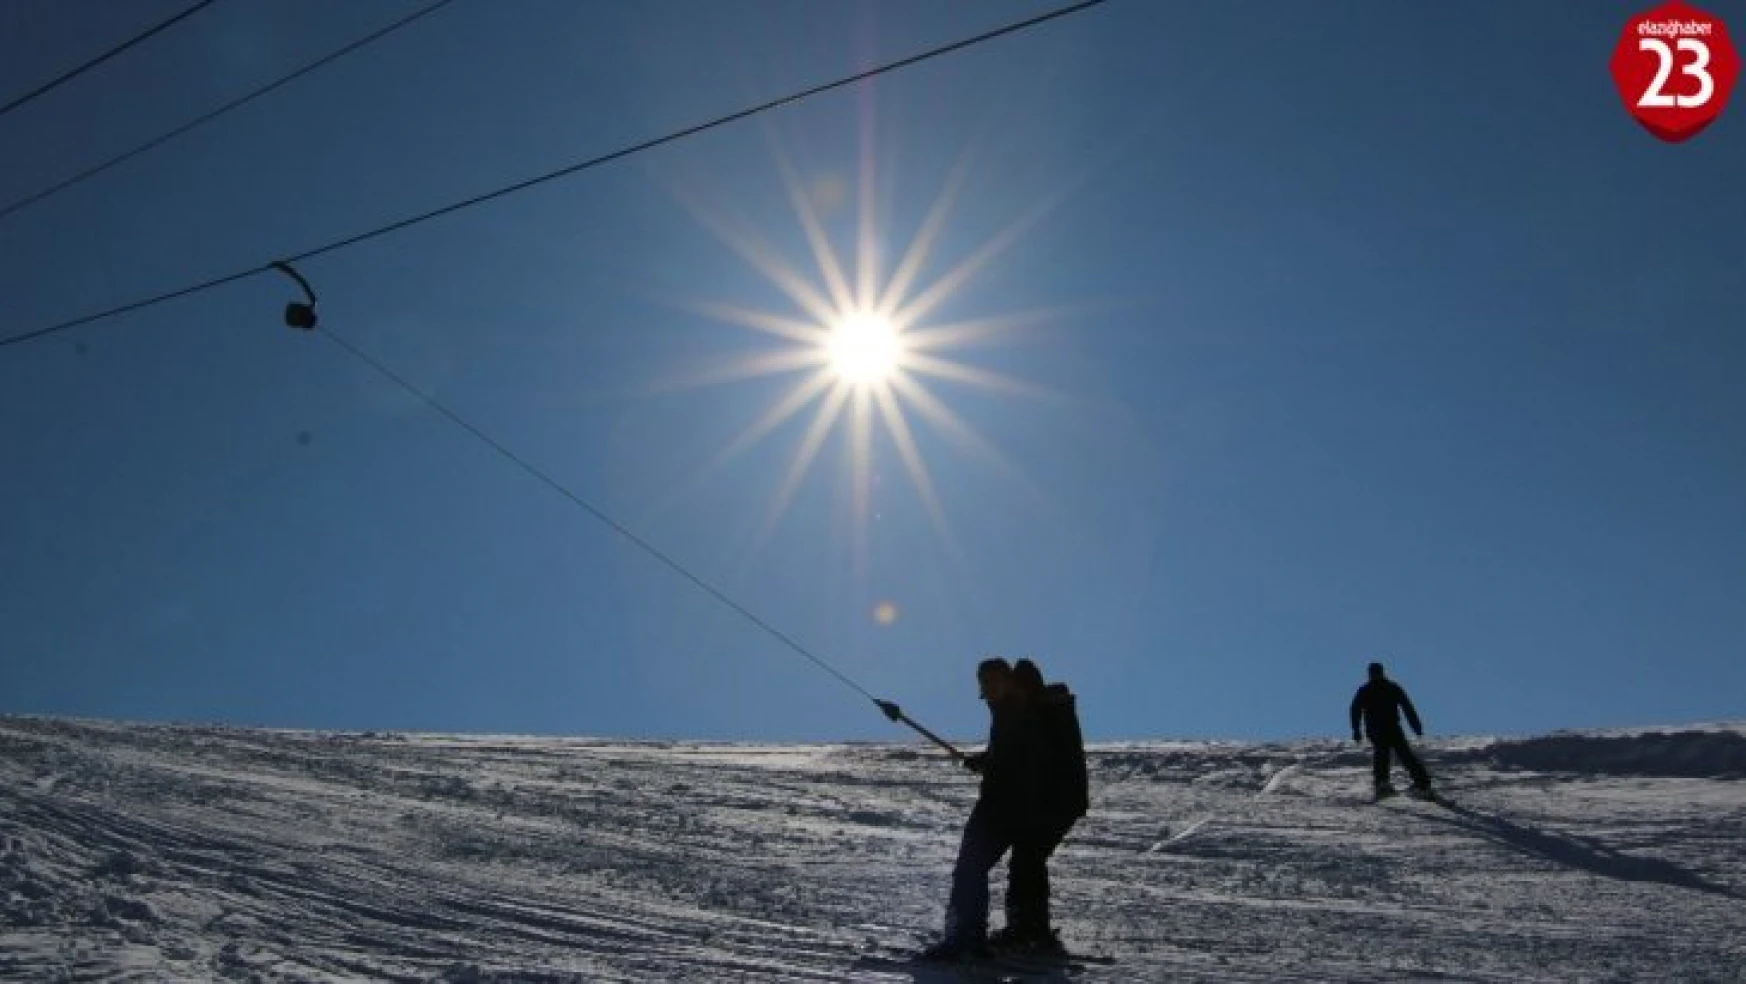 Elazığ'da kayak merkezinde tatilciler festivalle coştu